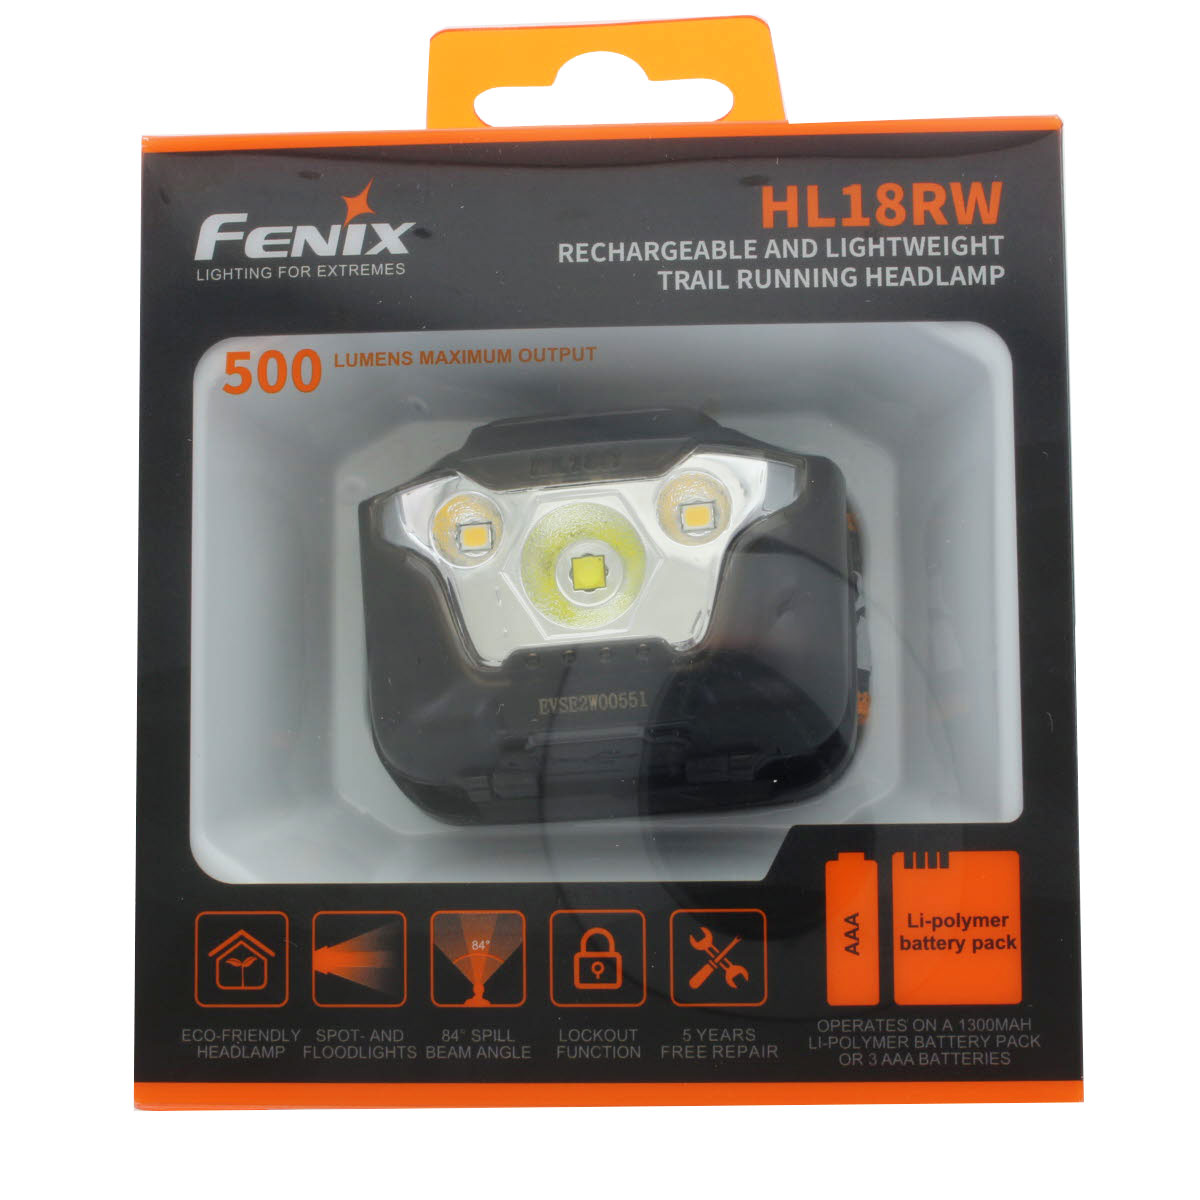 Fenix HL18RW LED Stirnlampe mit bis zu 500 Lumen Helligkeit inklusive ARB-LP-1300 Li-Polymer Akkupack